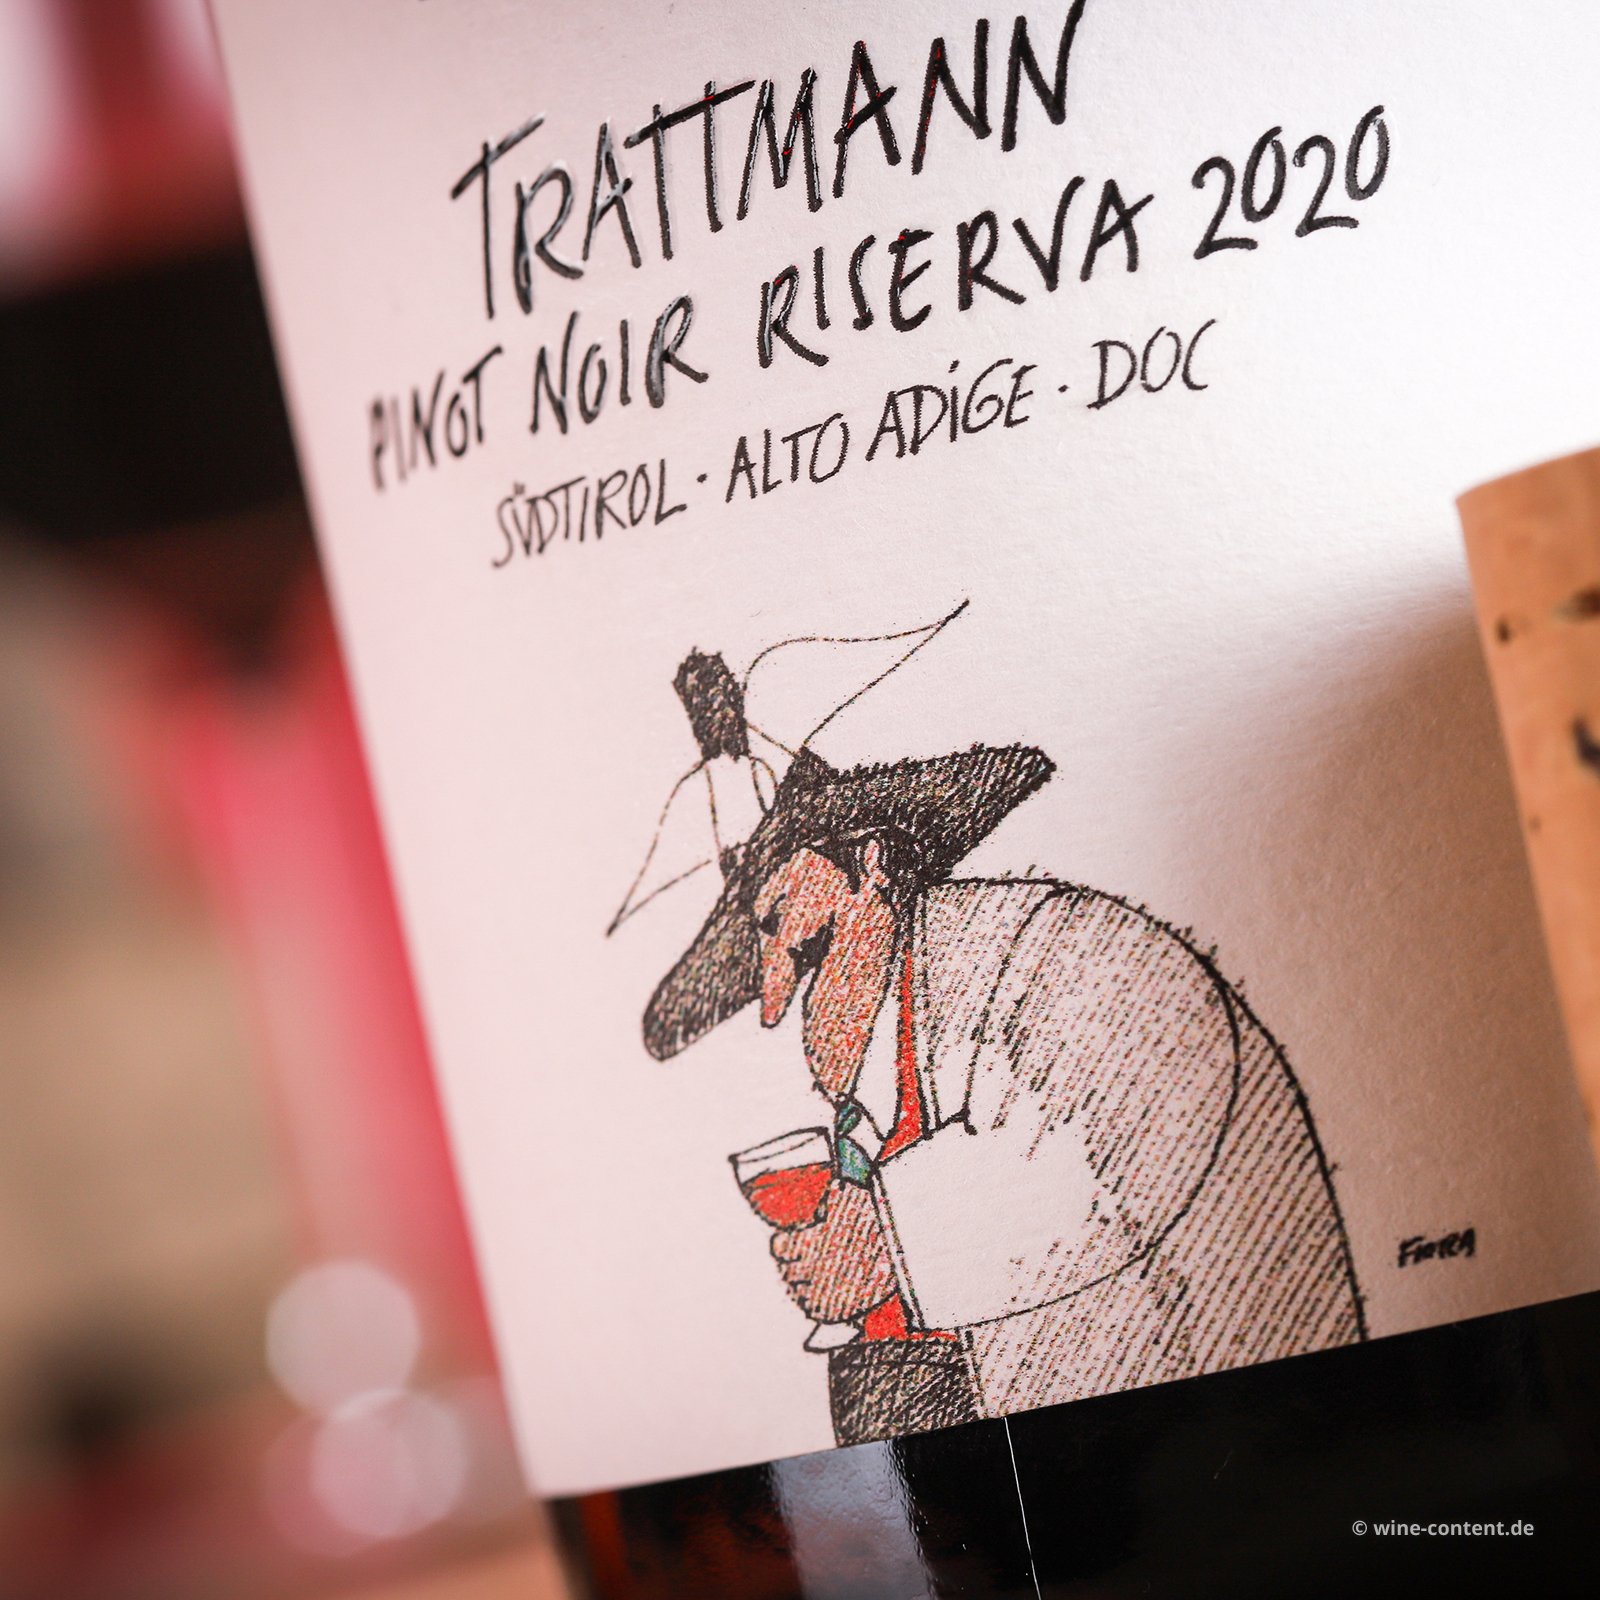 Pinot Noir Riserva 2020 Trattmann